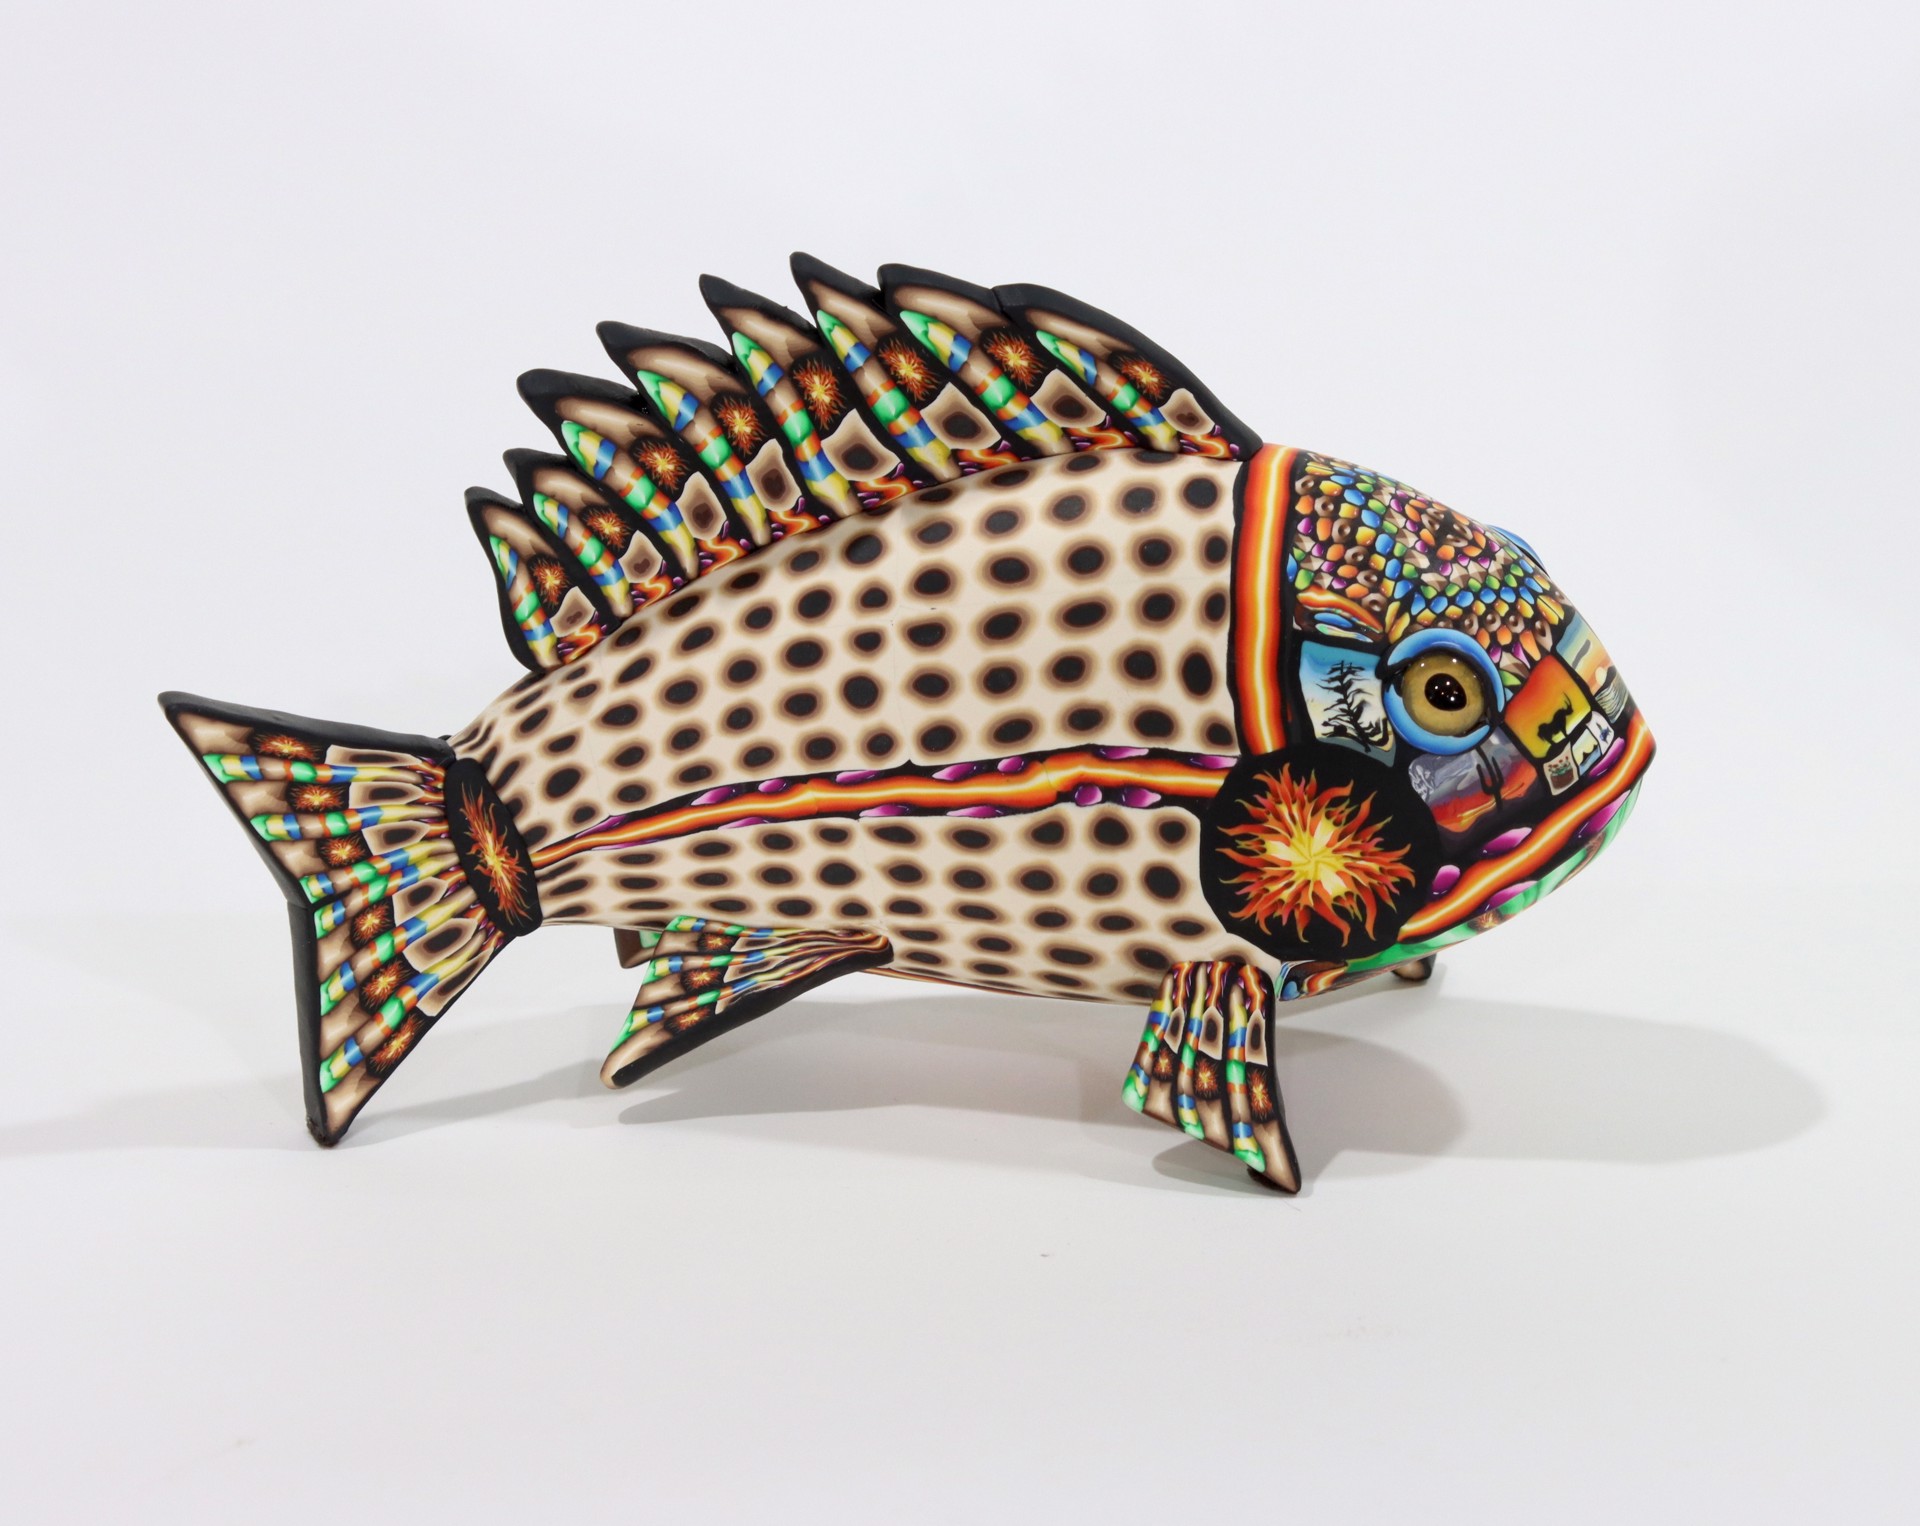 Fish by Adam Thomas Rees